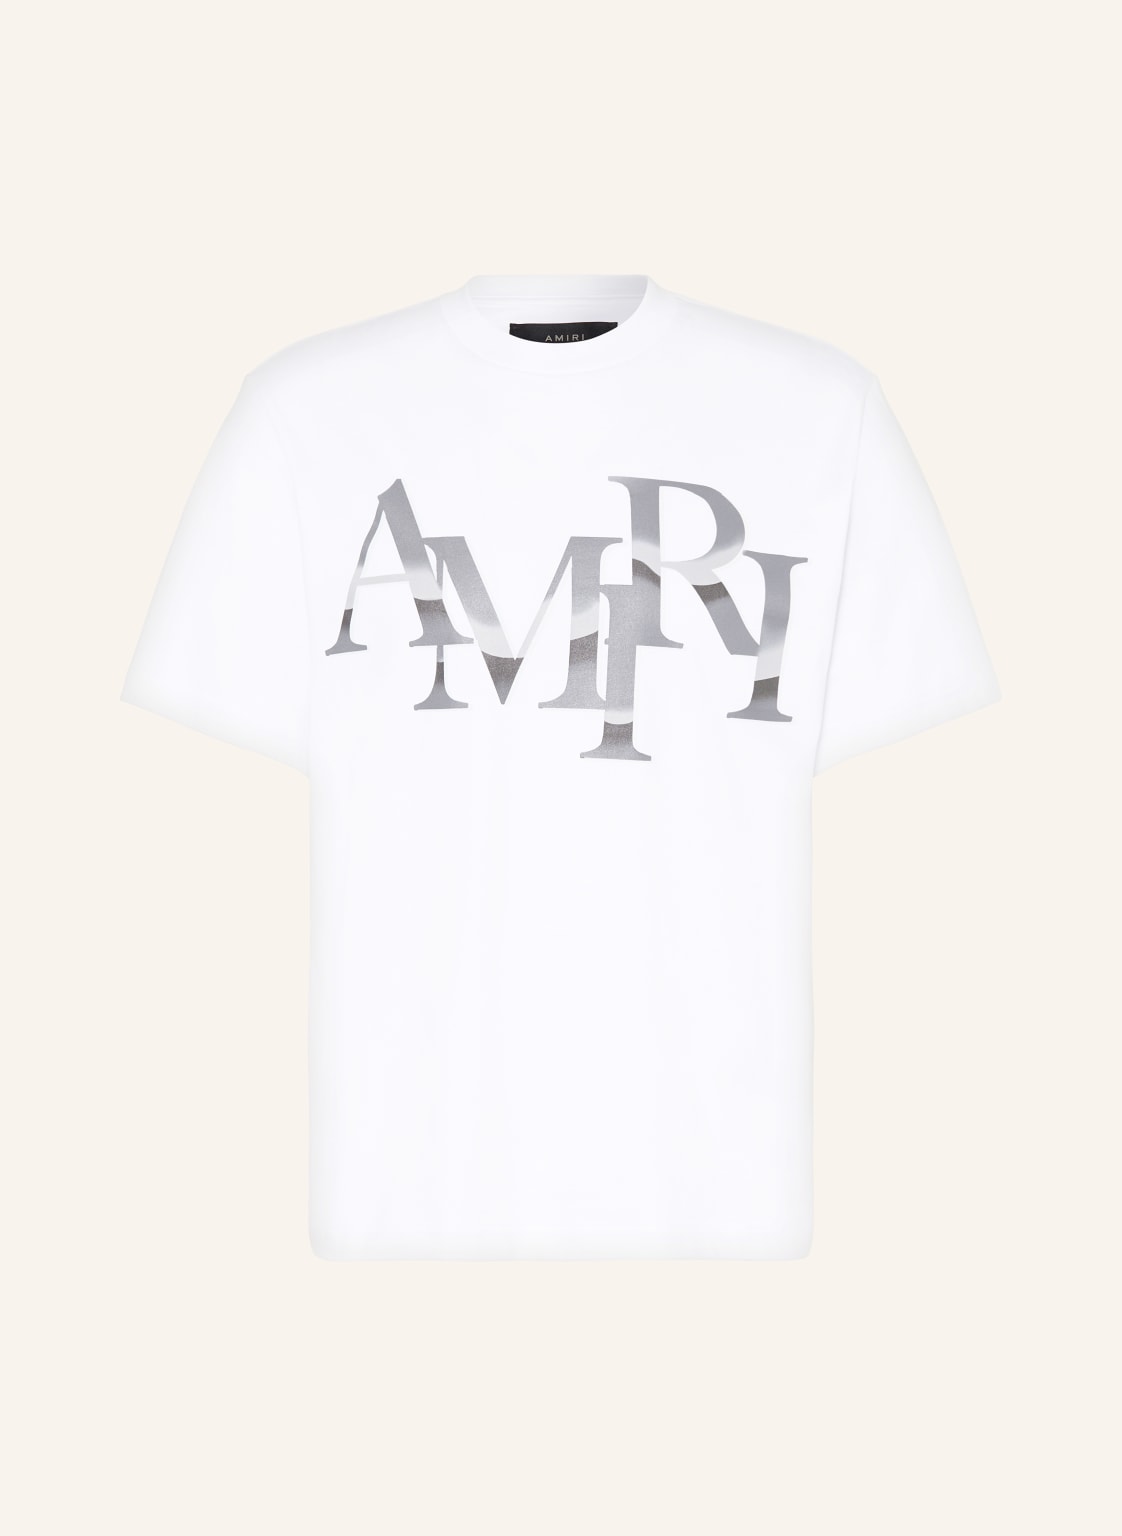 Amiri T-Shirt weiss von AMIRI